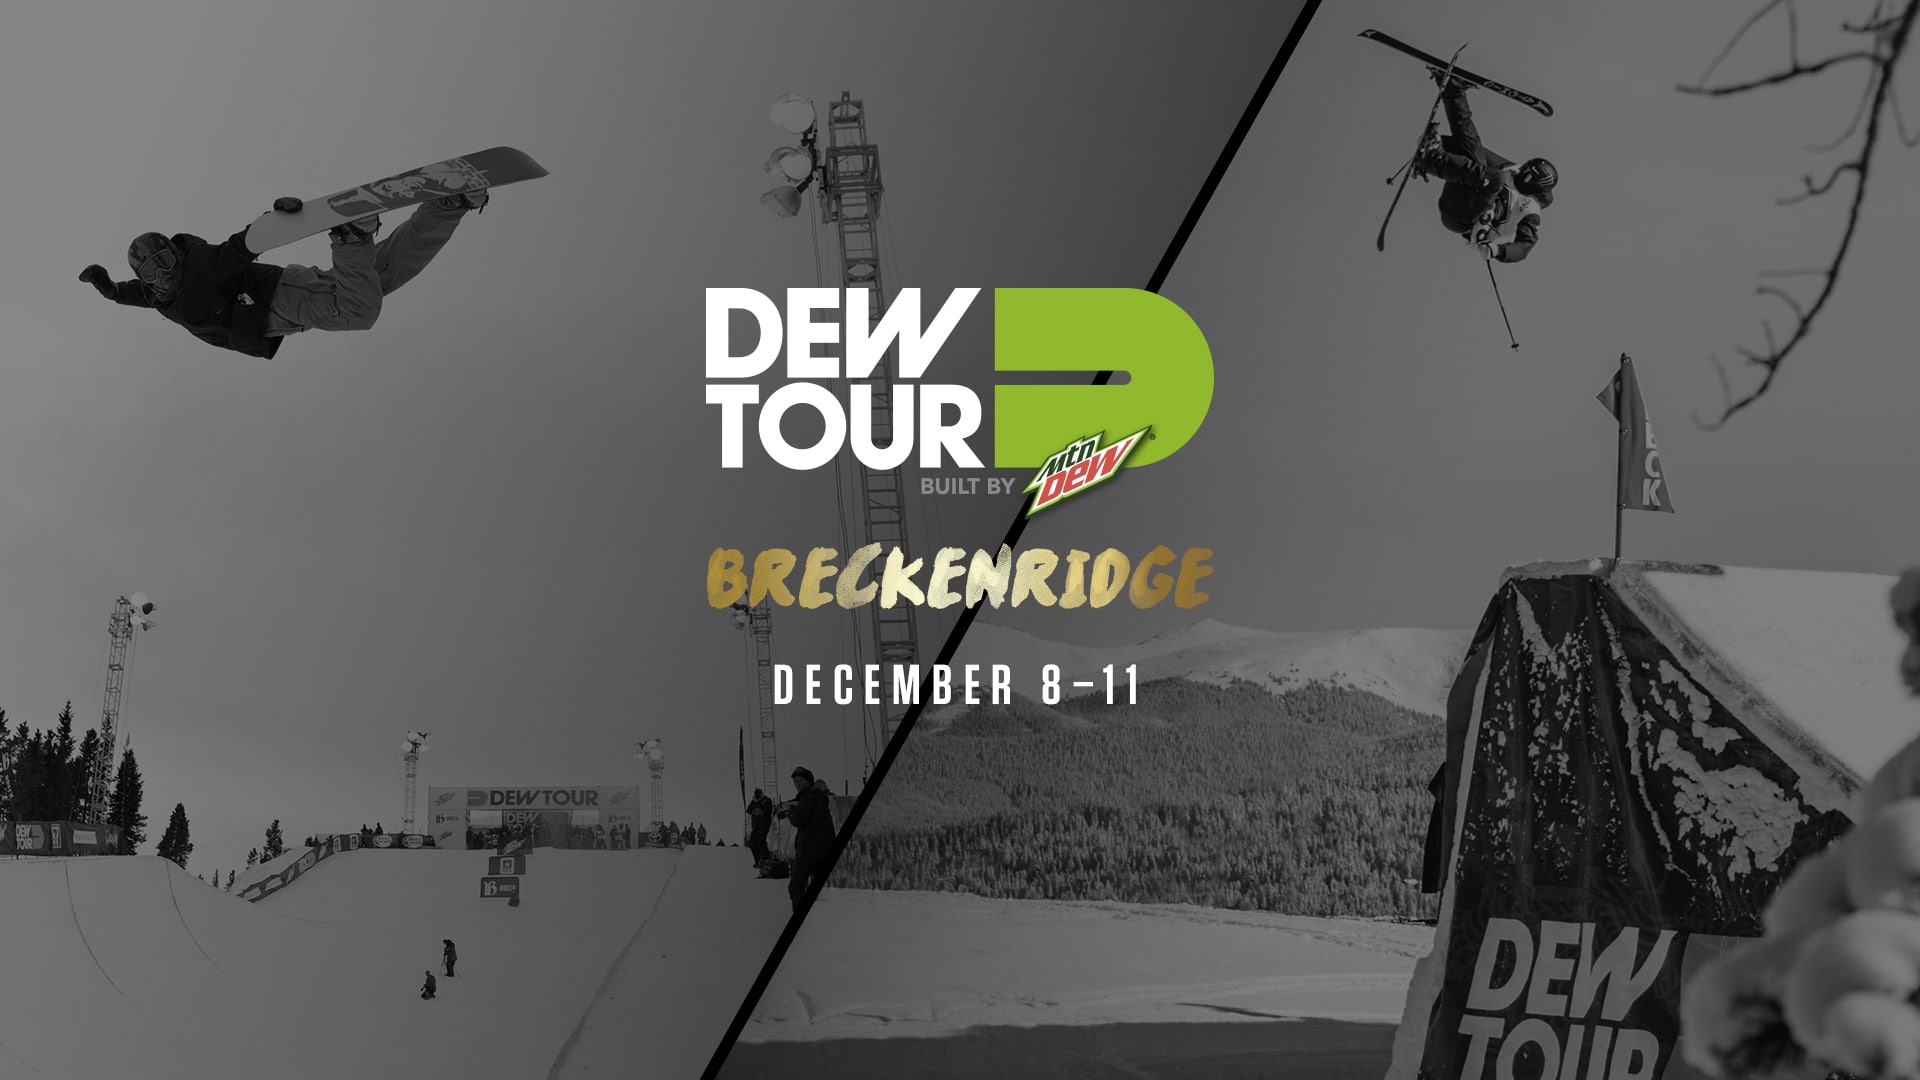 Dew Tour Breckenridge 2016 Updates